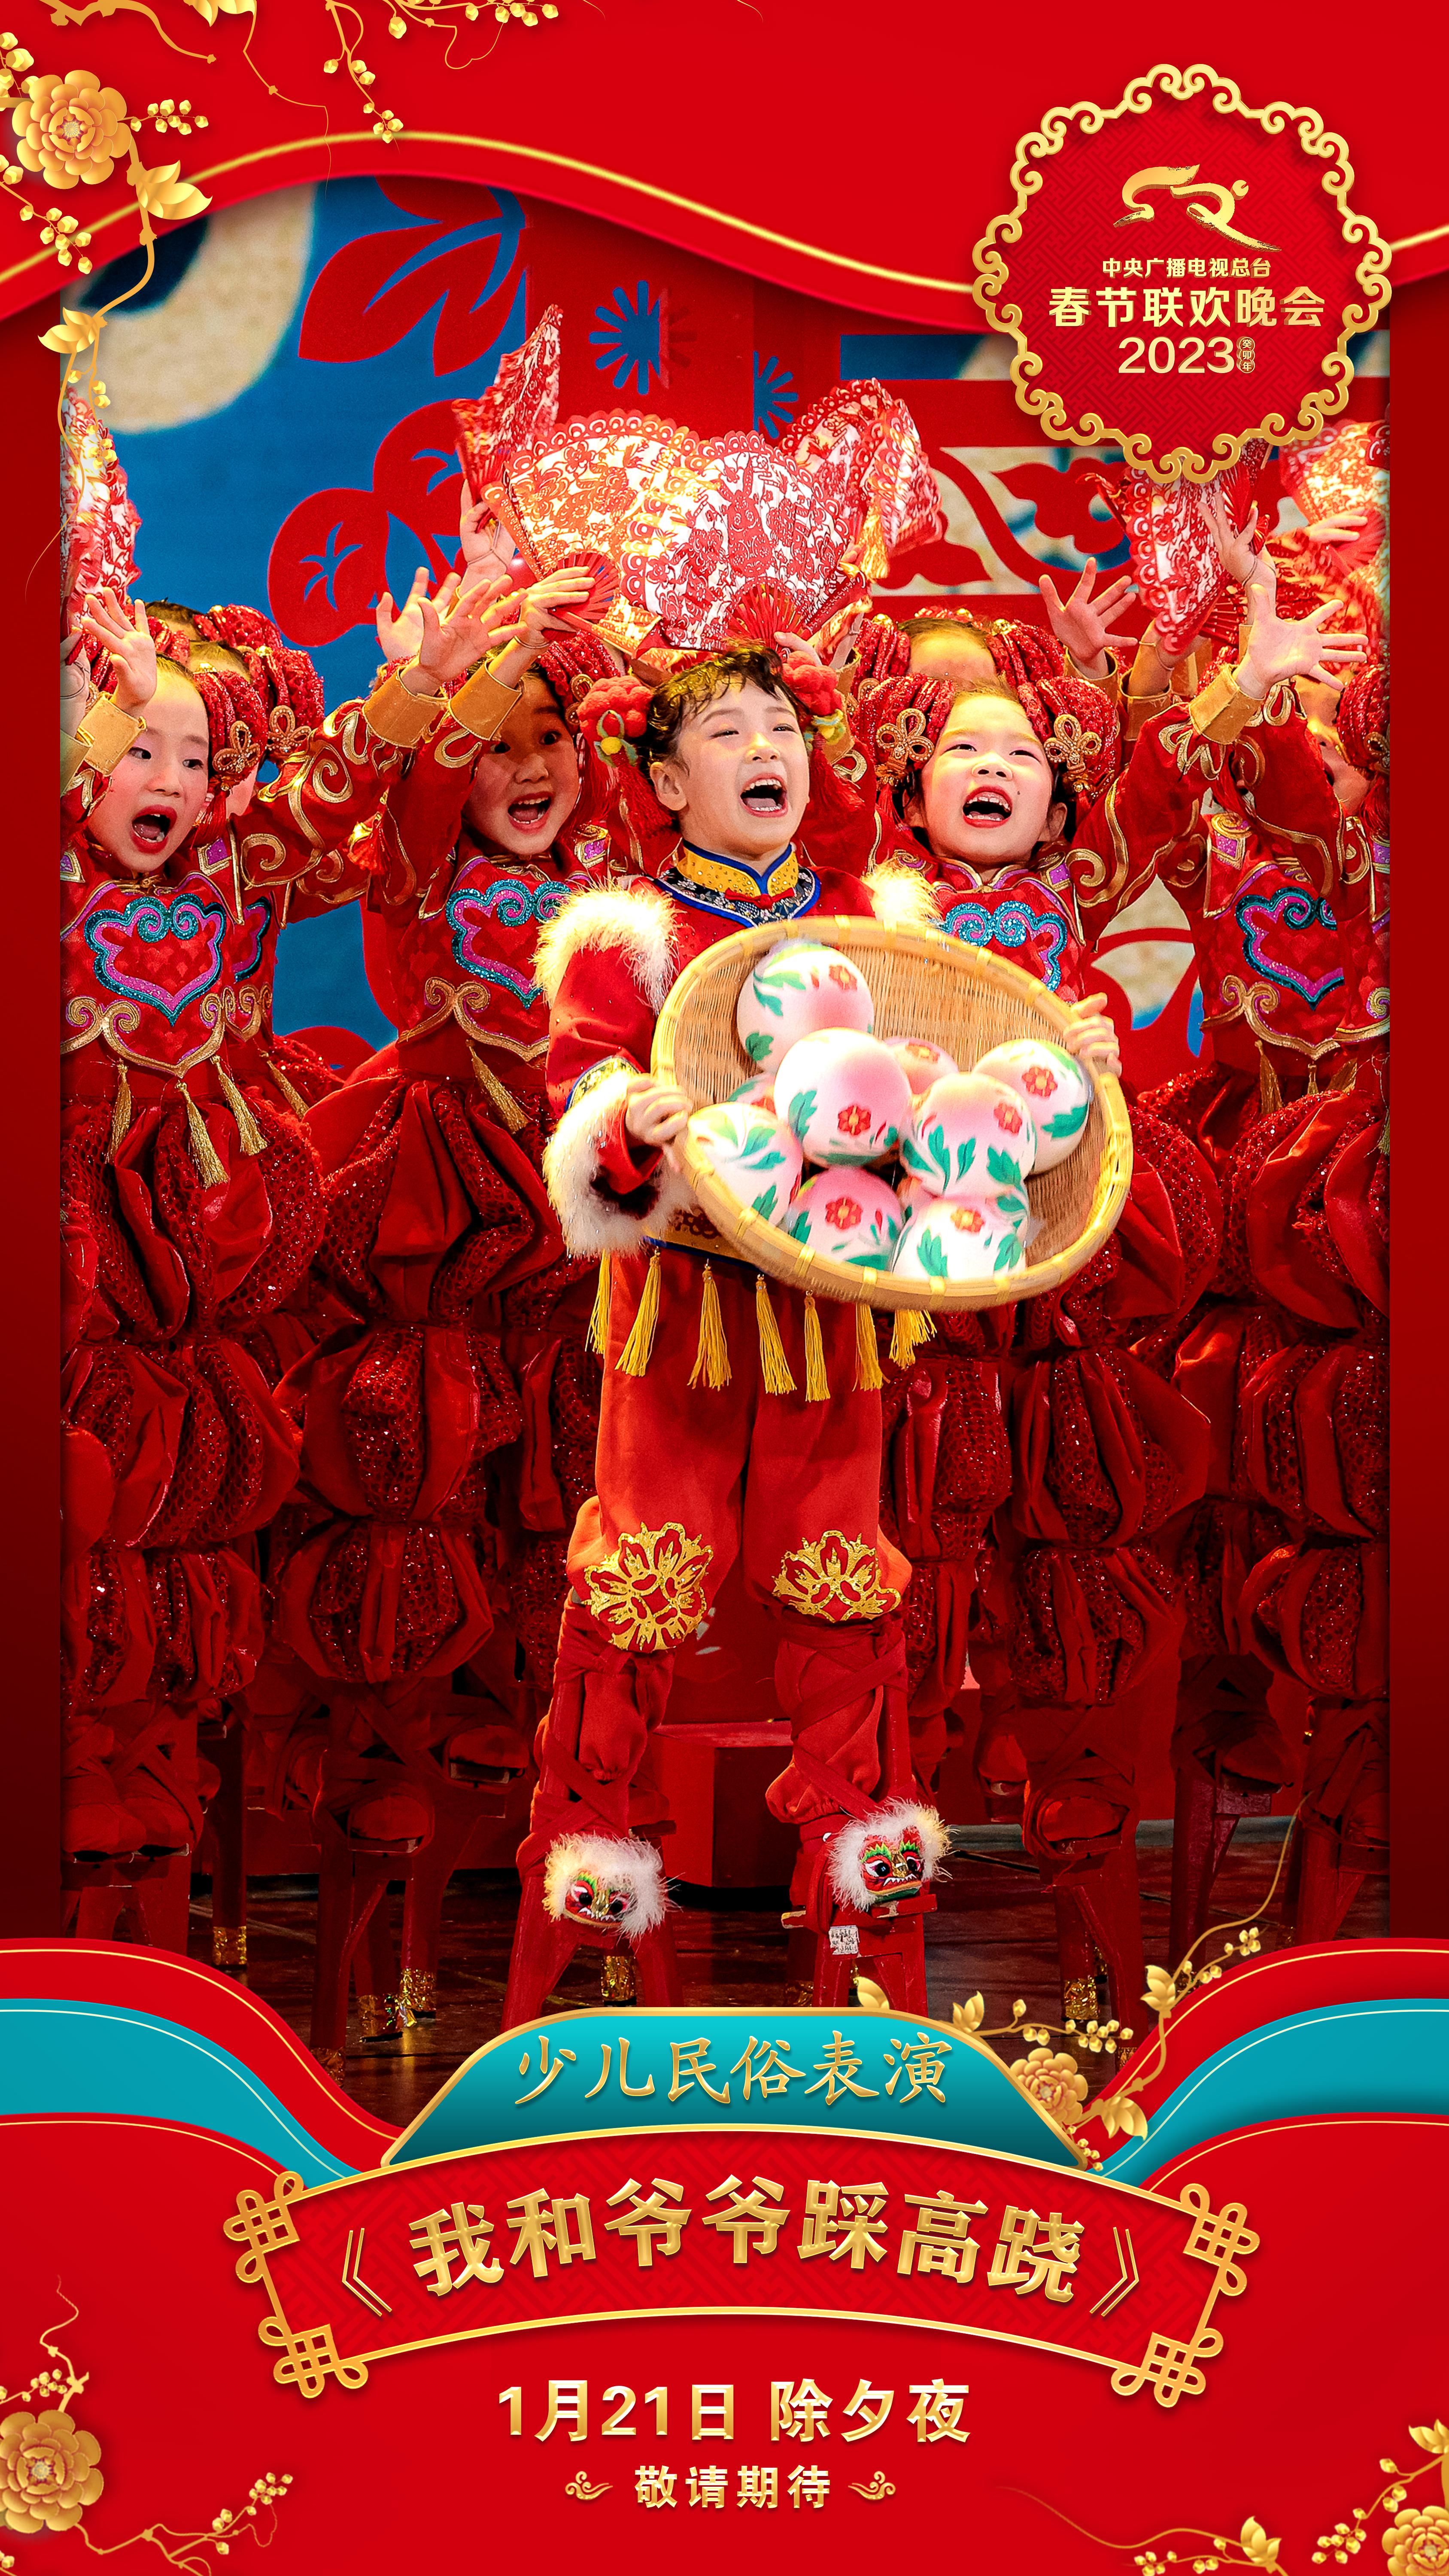 中央广播电视总台《2023年春节联欢晚会》节目海报发布